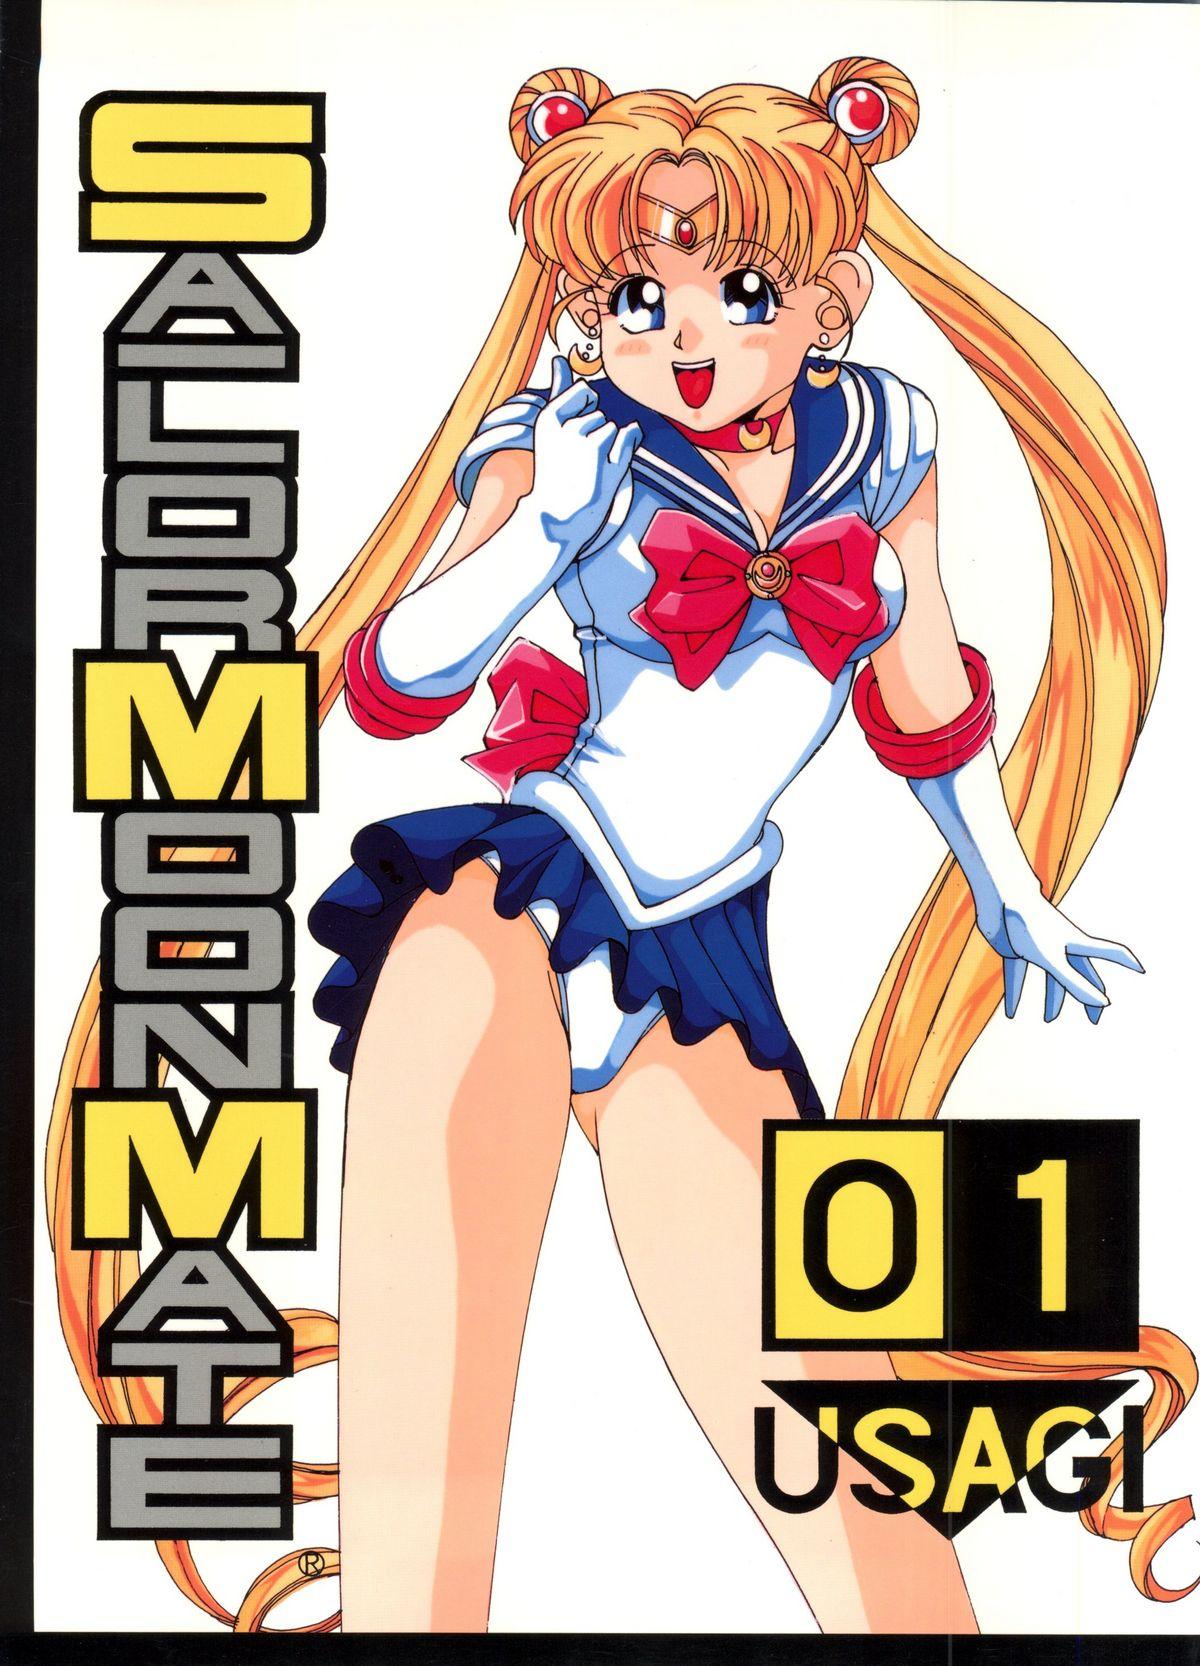 Sailor Moon Mate 01 - Usagi 0